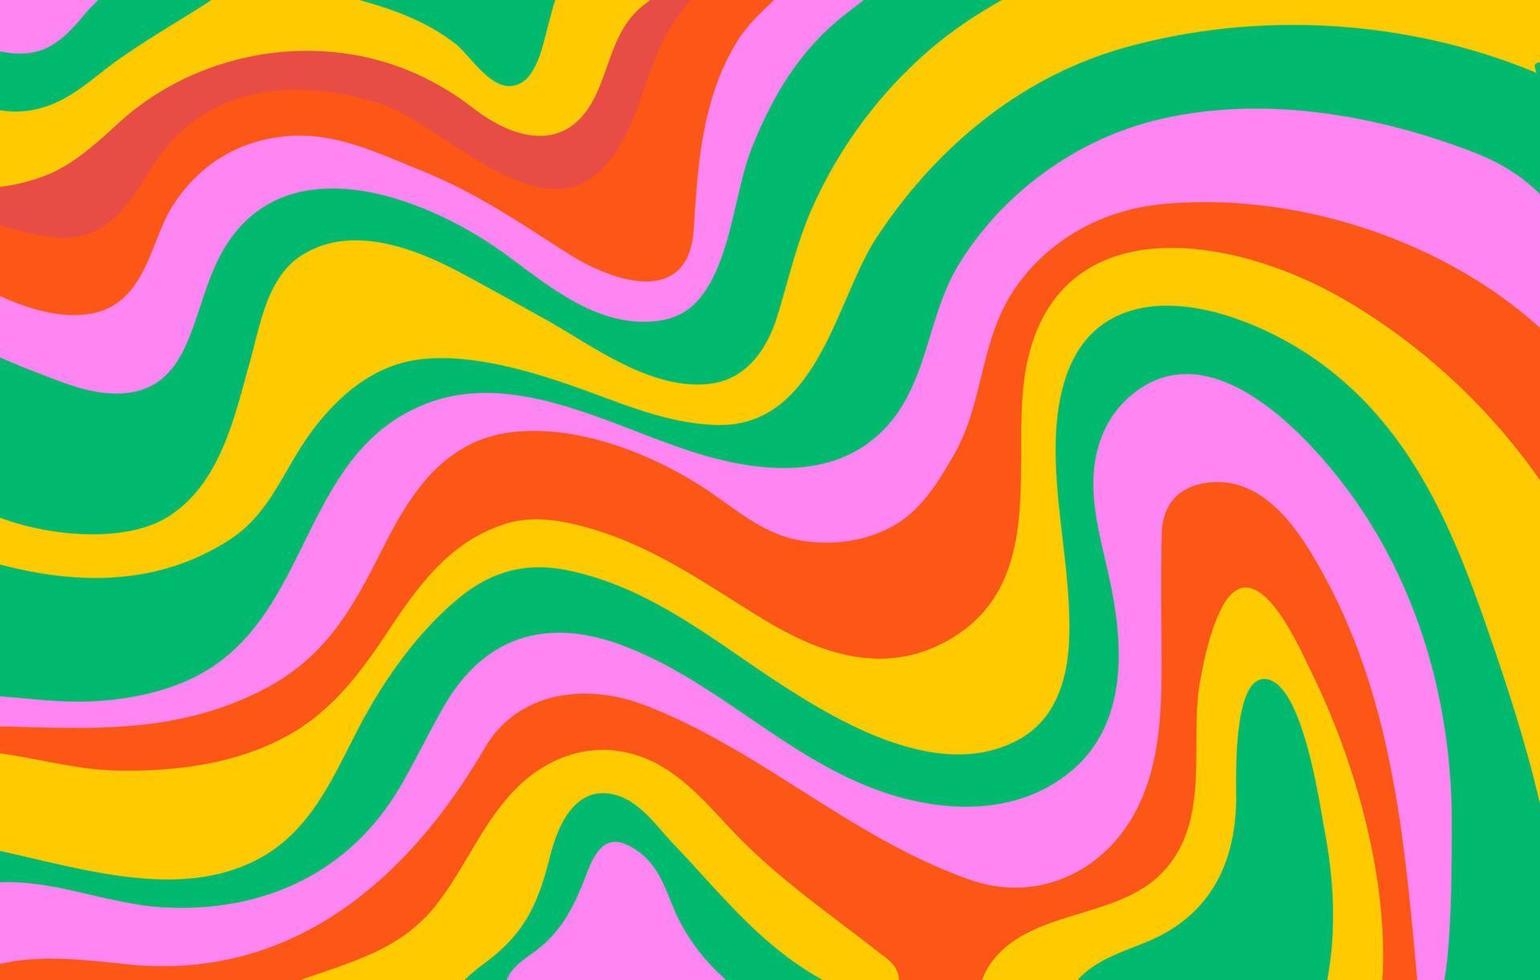 fondo psicodélico horizontal abstracto con ondas coloridas. ilustración de vector de moda en estilo hippie 60s, 70s.